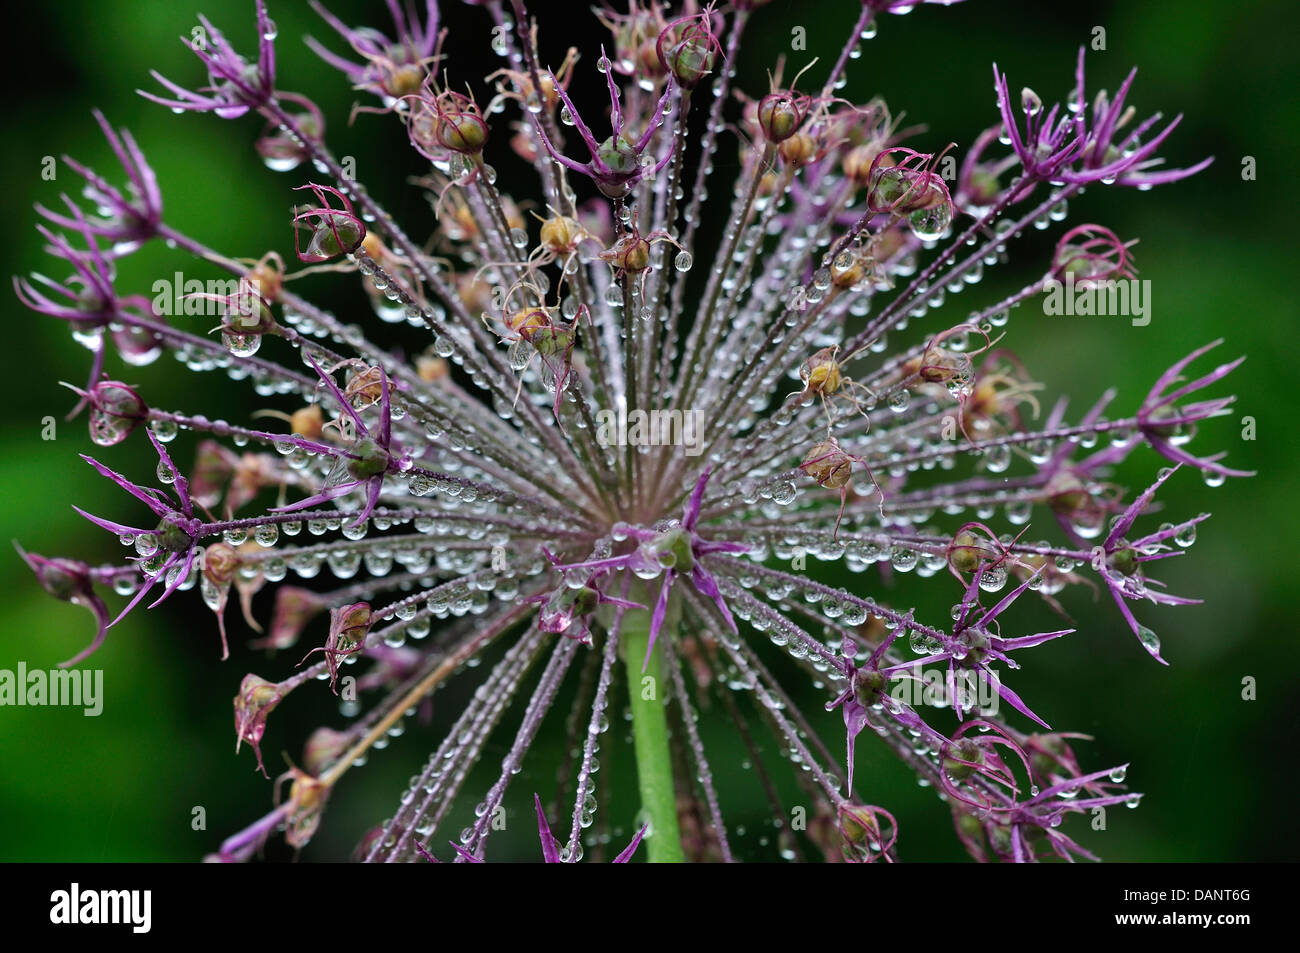 Raindrops on an alium flower head UK Stock Photo